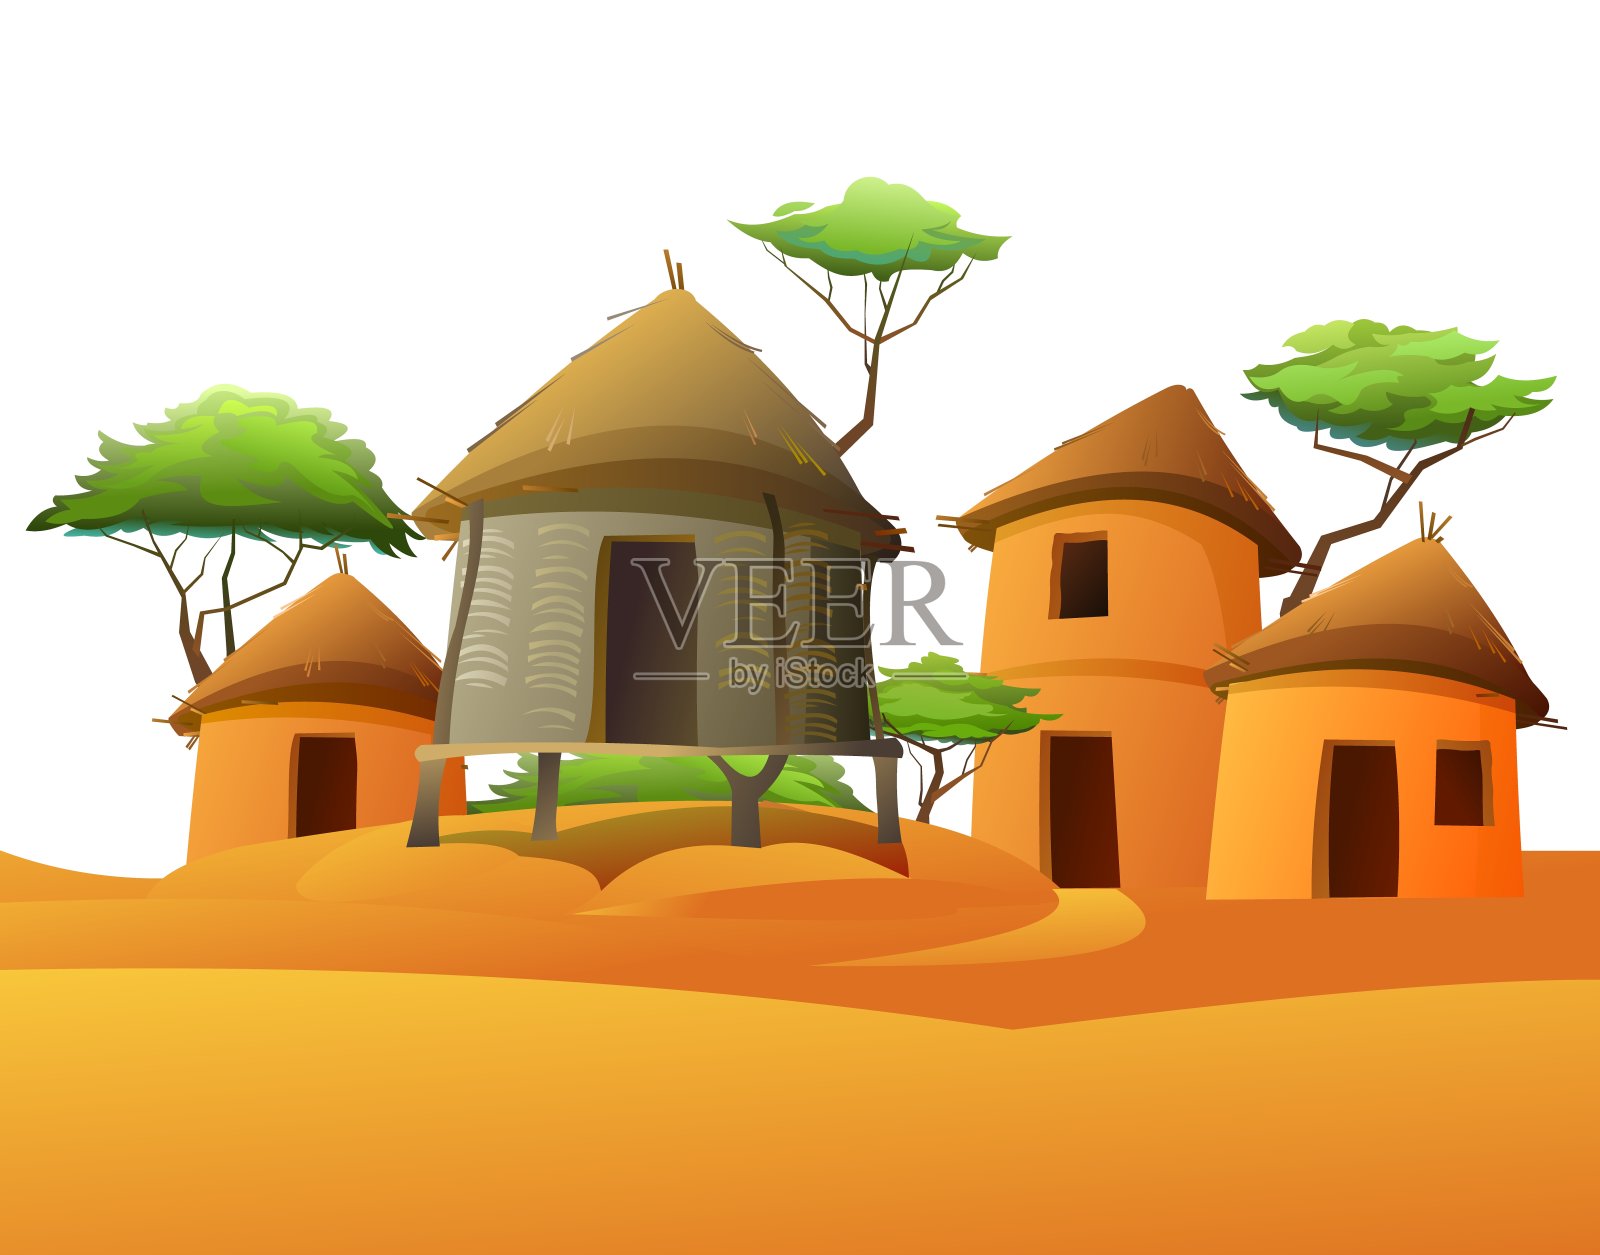 非洲村庄小屋 图库摄影片. 图片 包括有 沙子, 圆顶, 问题, 徒步旅行队, 特征, 吠声, 布琼布拉 - 111590477